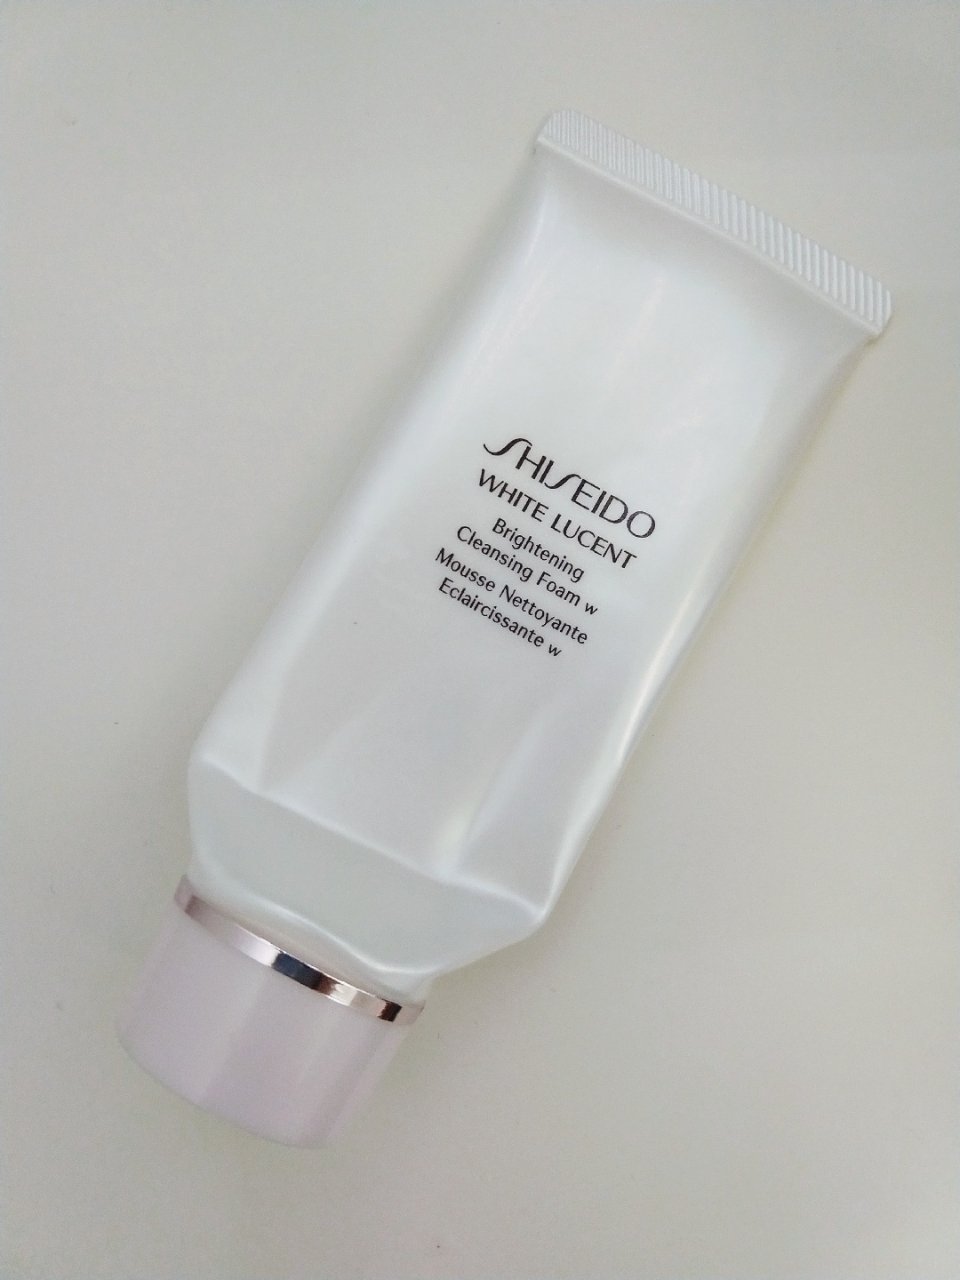 Shiseido 资生堂,新透白,洗面奶推荐